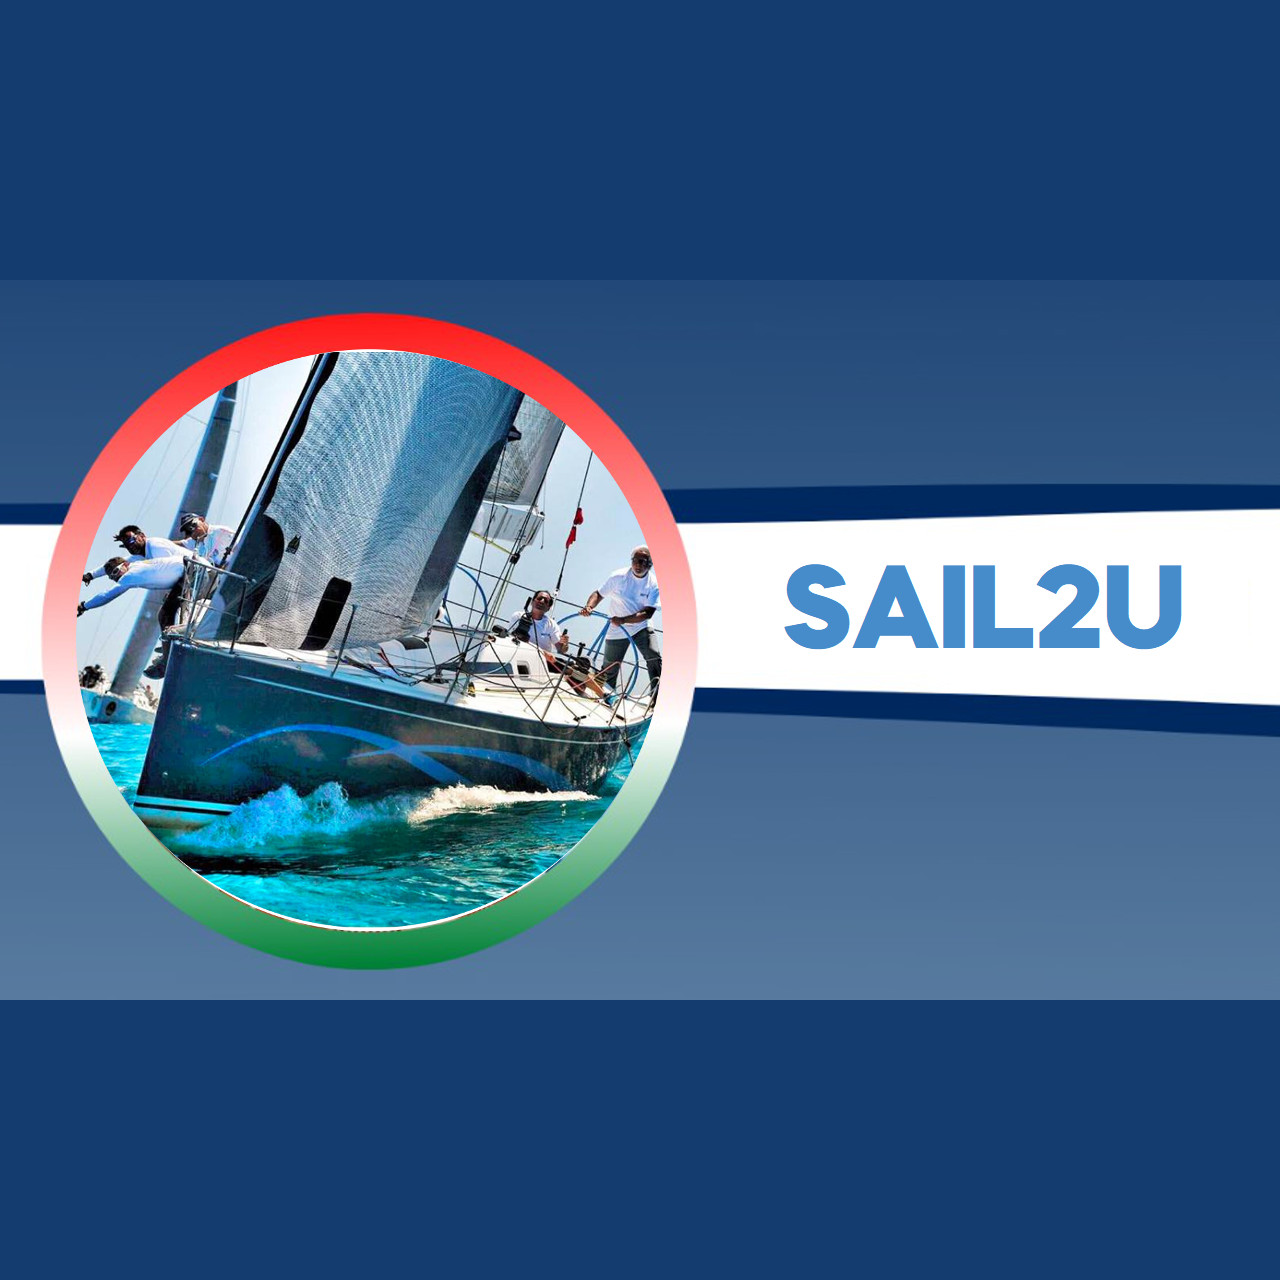 Sail2u con Alberto Riva: Velista secondo classificato alla MiniTransat 2021